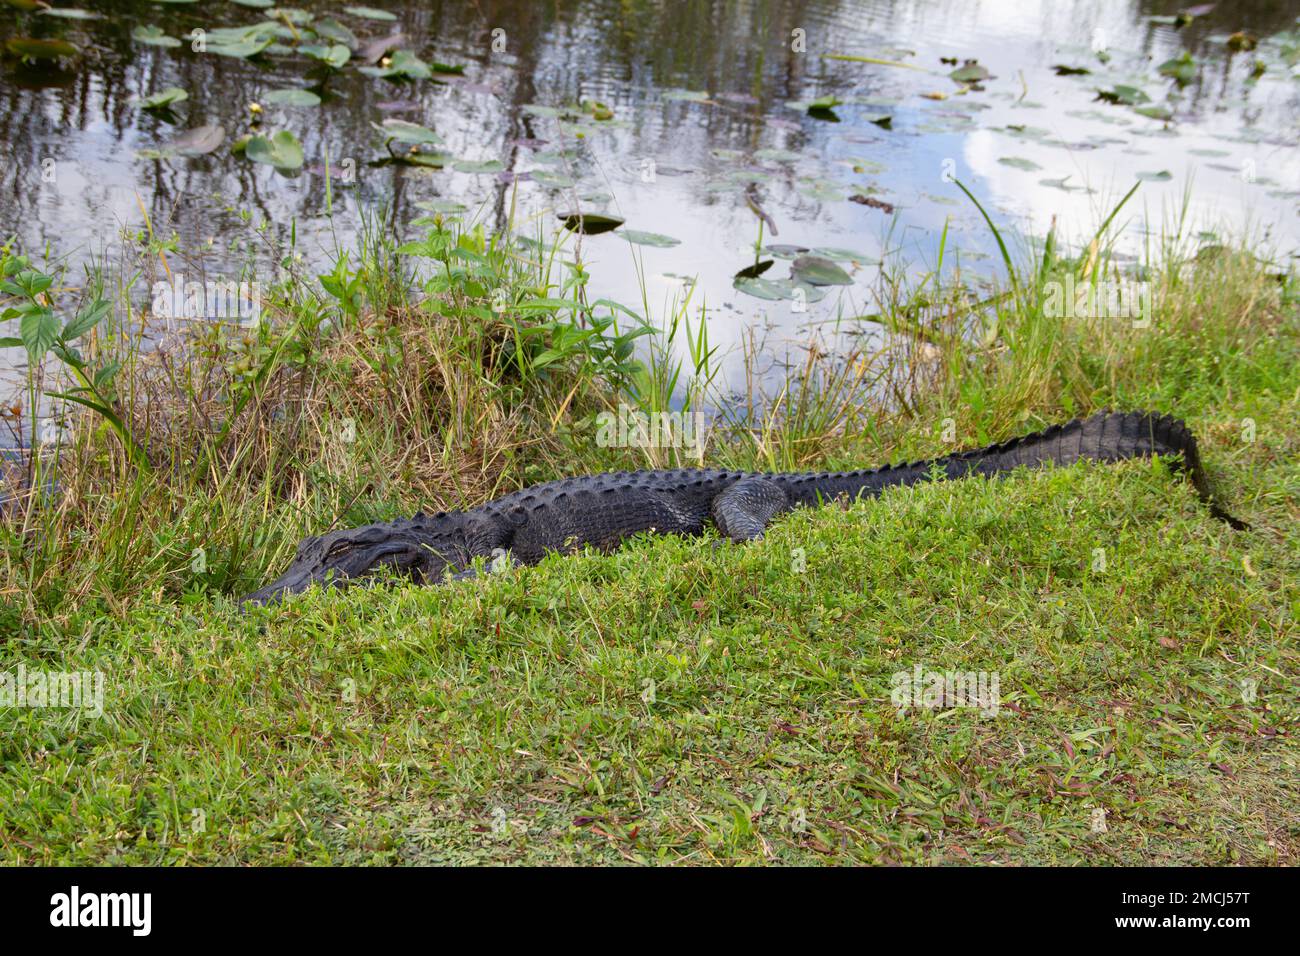 Alligator américain se cachant dans l'herbe et dormant près d'un plan d'eau, Floride, États-Unis Banque D'Images